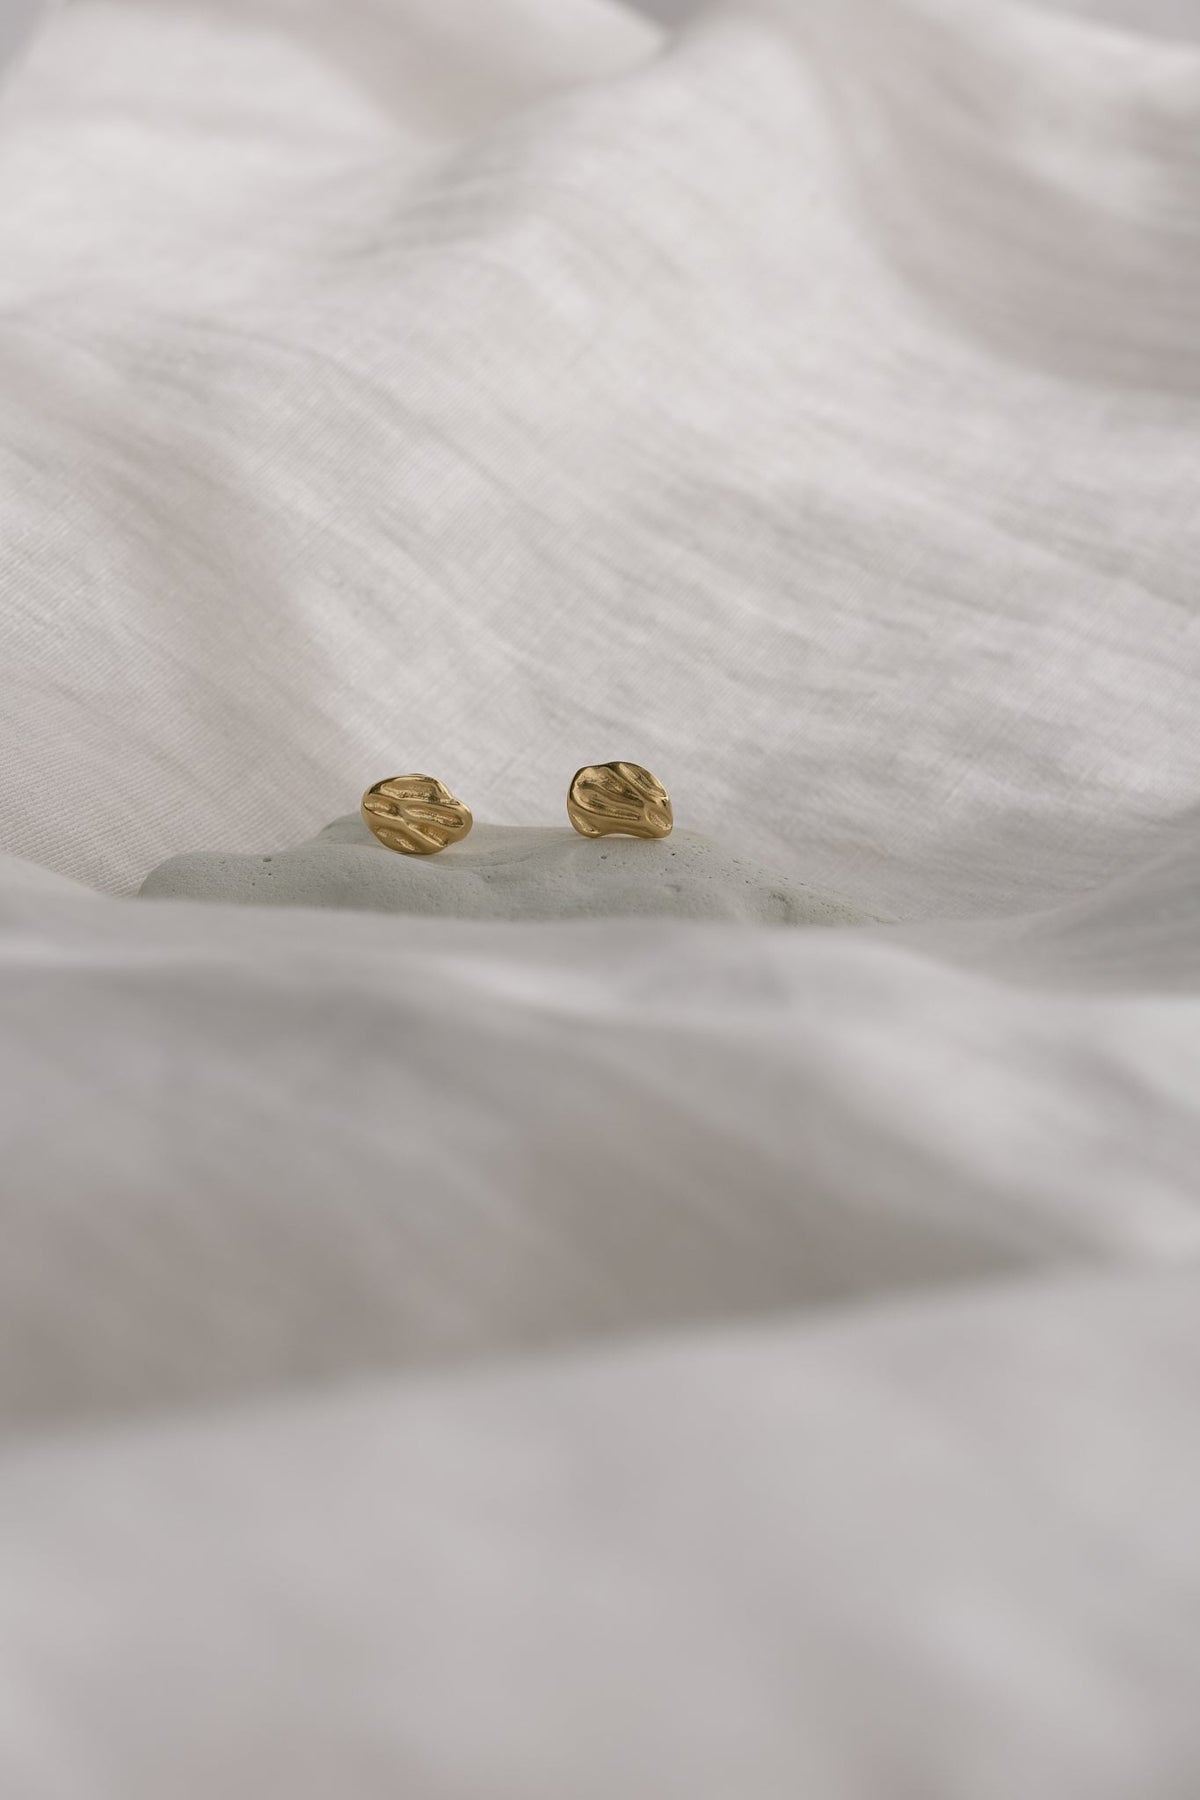 ELV earrings 18k gold